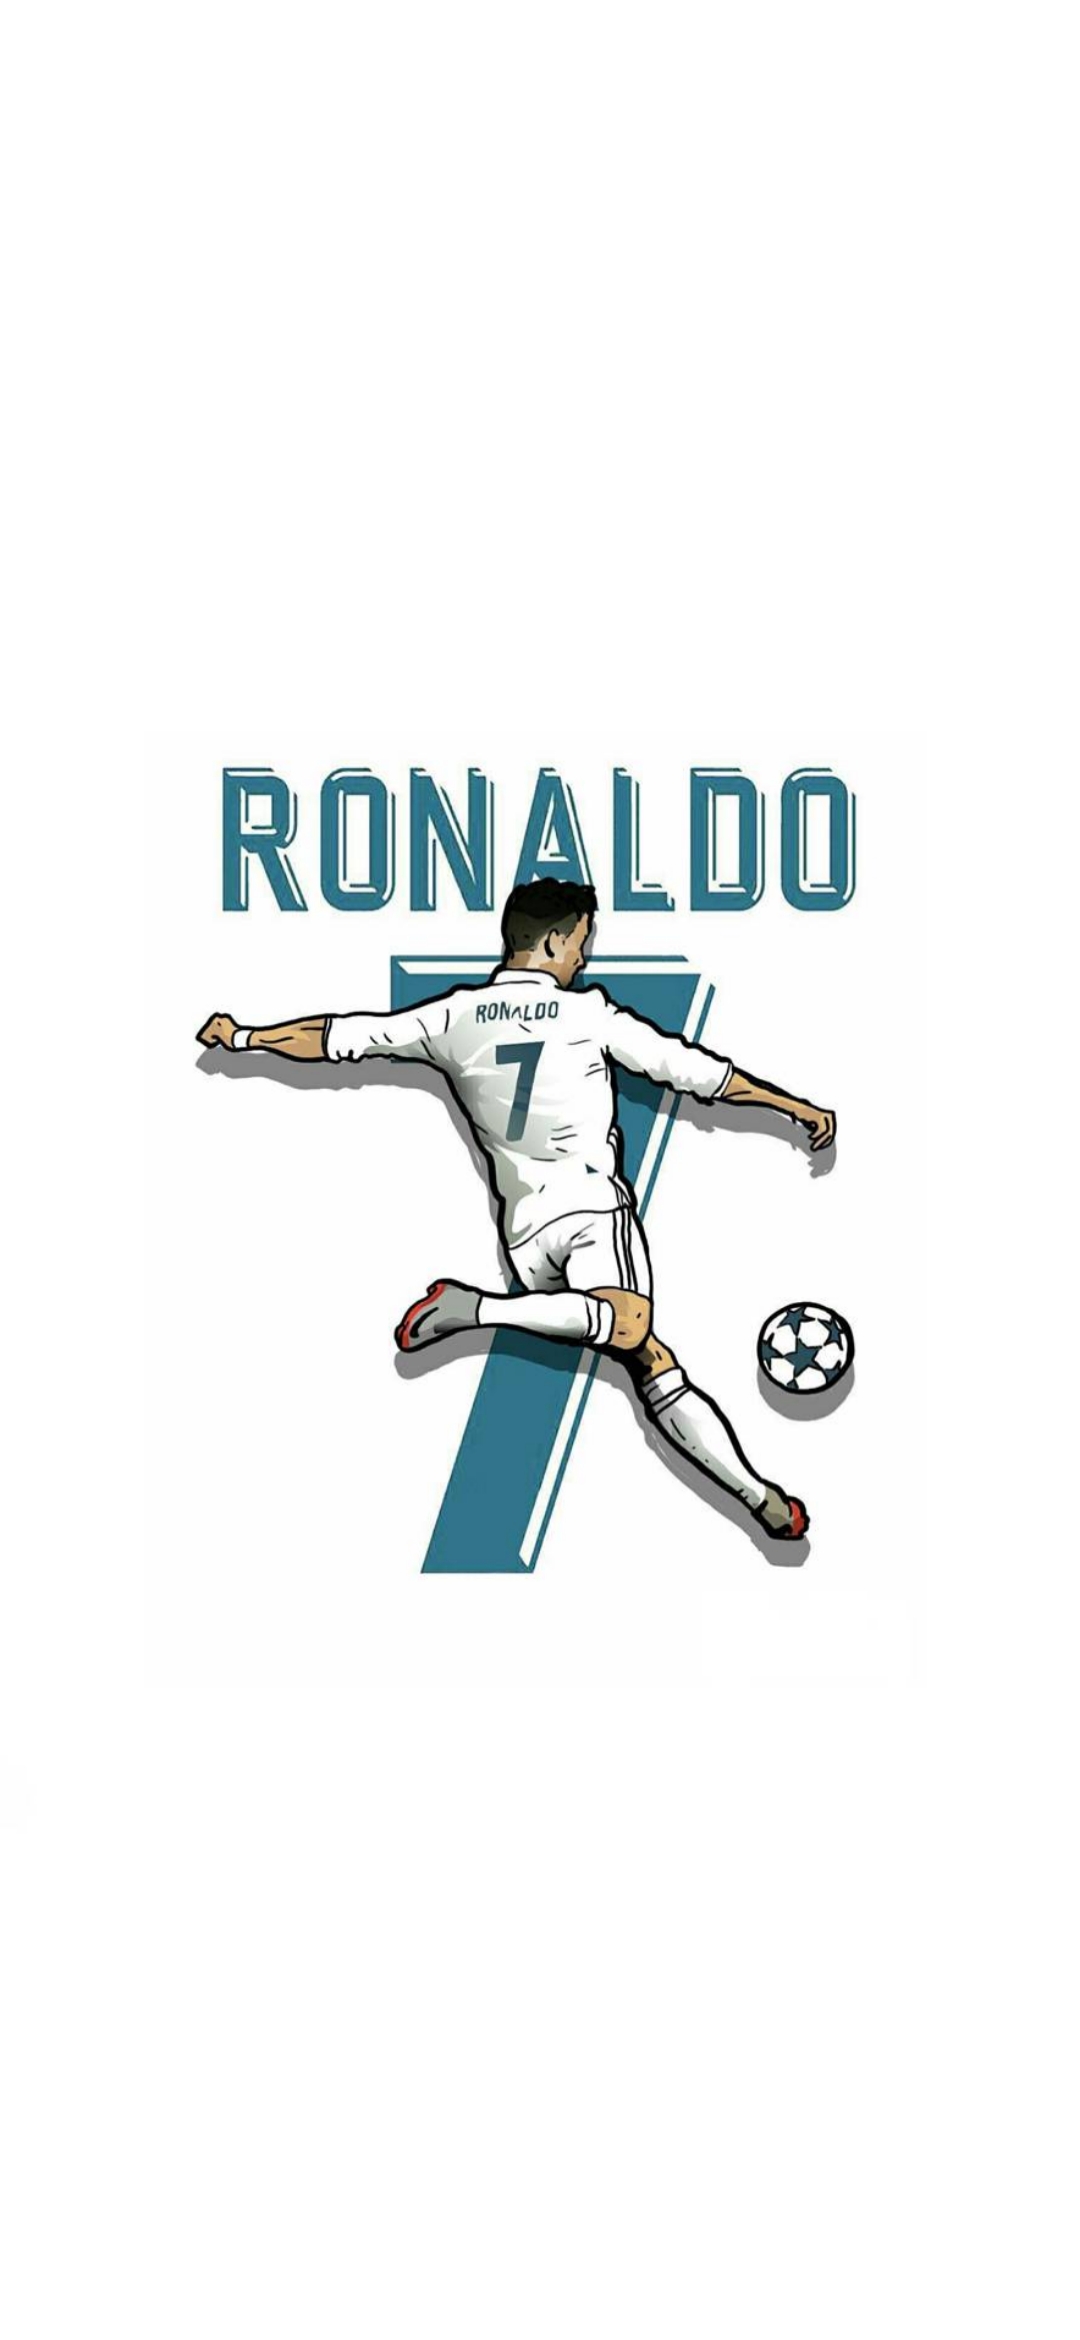 Cristiano Ronaldo Background Images